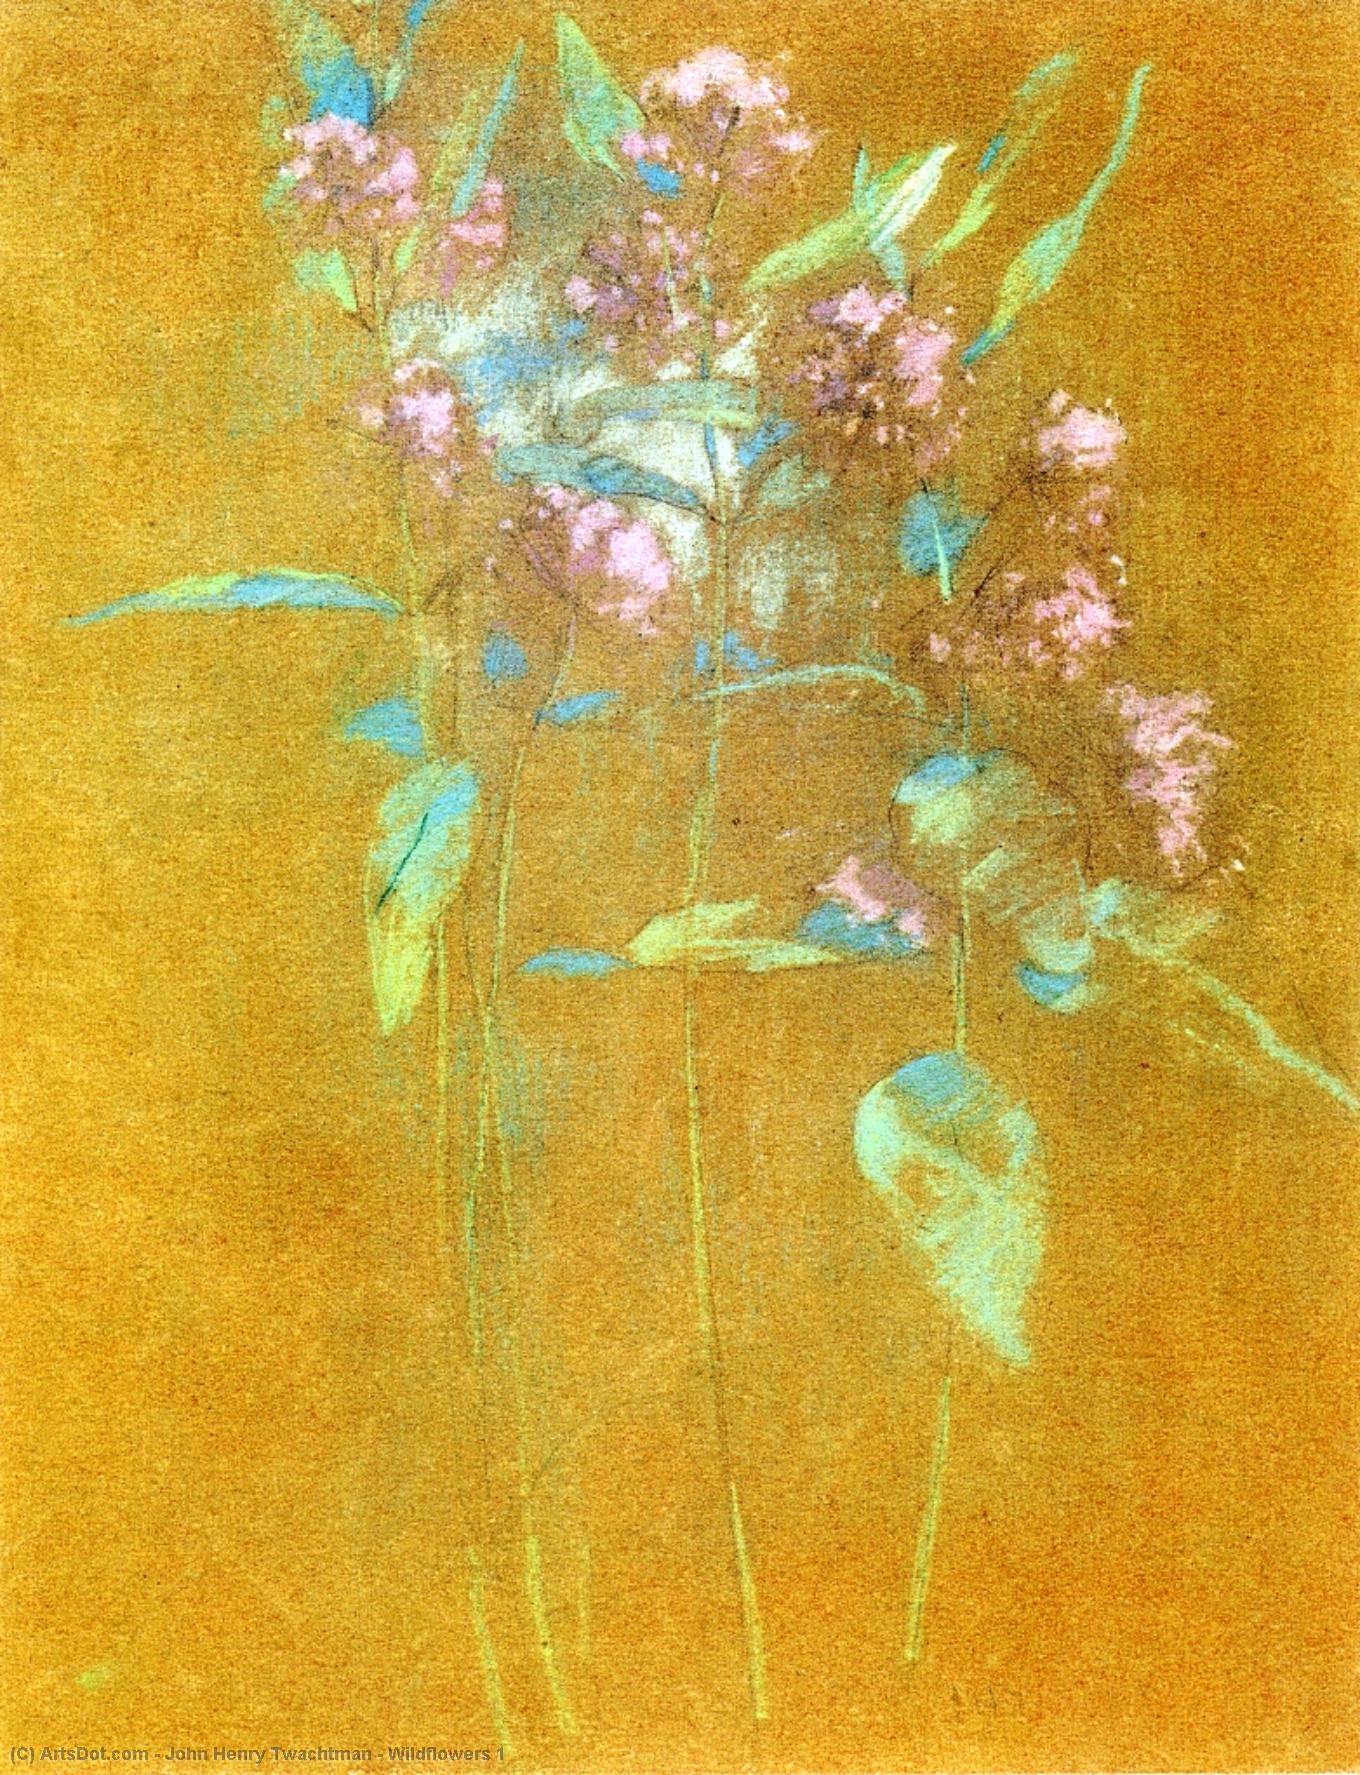 WikiOO.org - Encyclopedia of Fine Arts - Maleri, Artwork John Henry Twachtman - Wildflowers 1